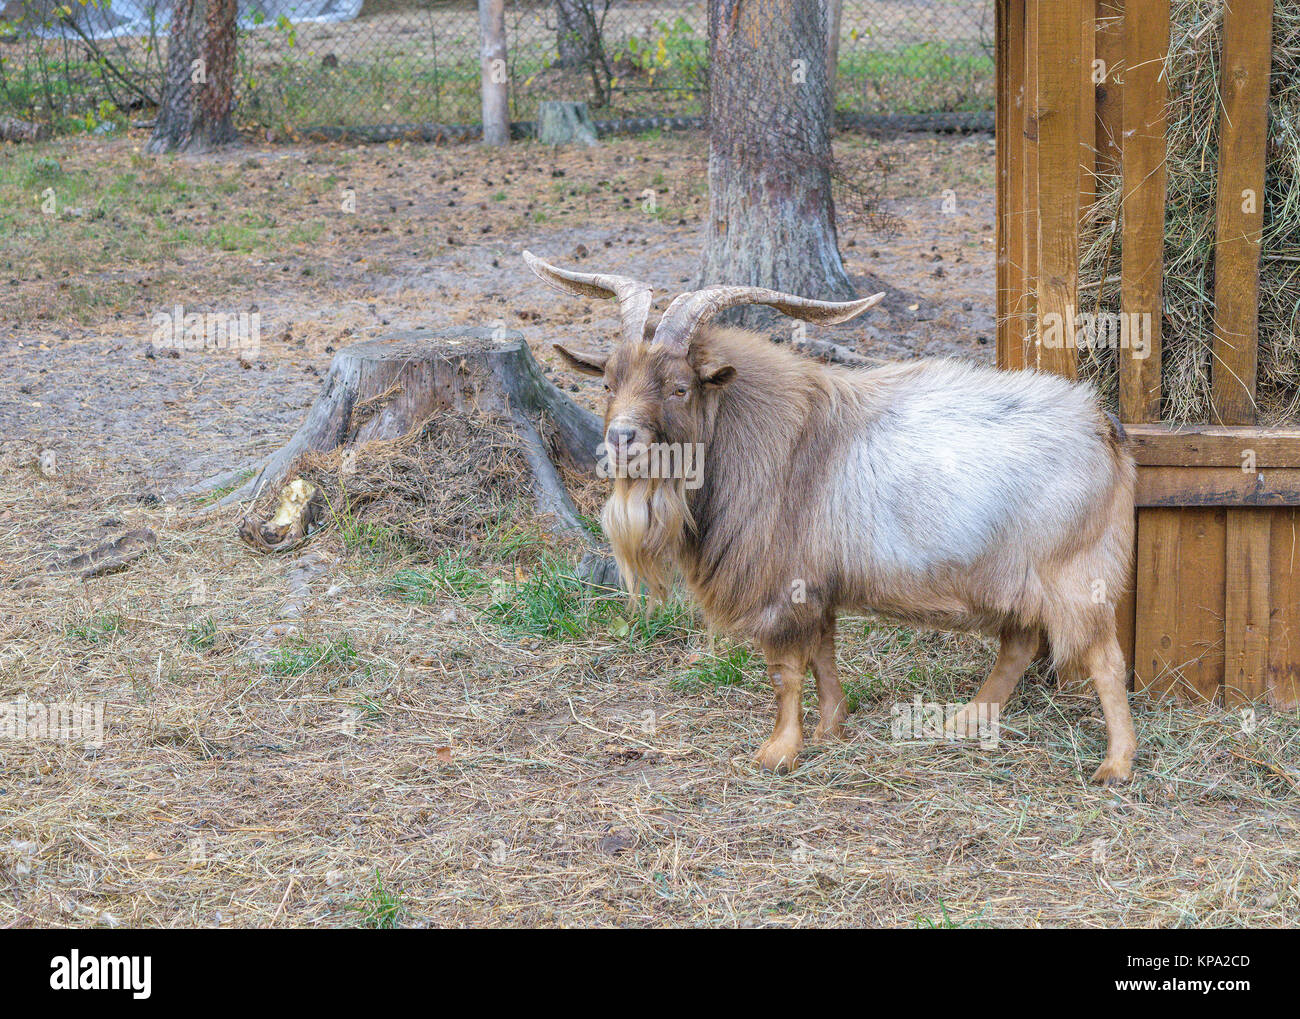 Shaggy horned mountain sheep (ovis ammon) près de l'engraissement au foin Banque D'Images